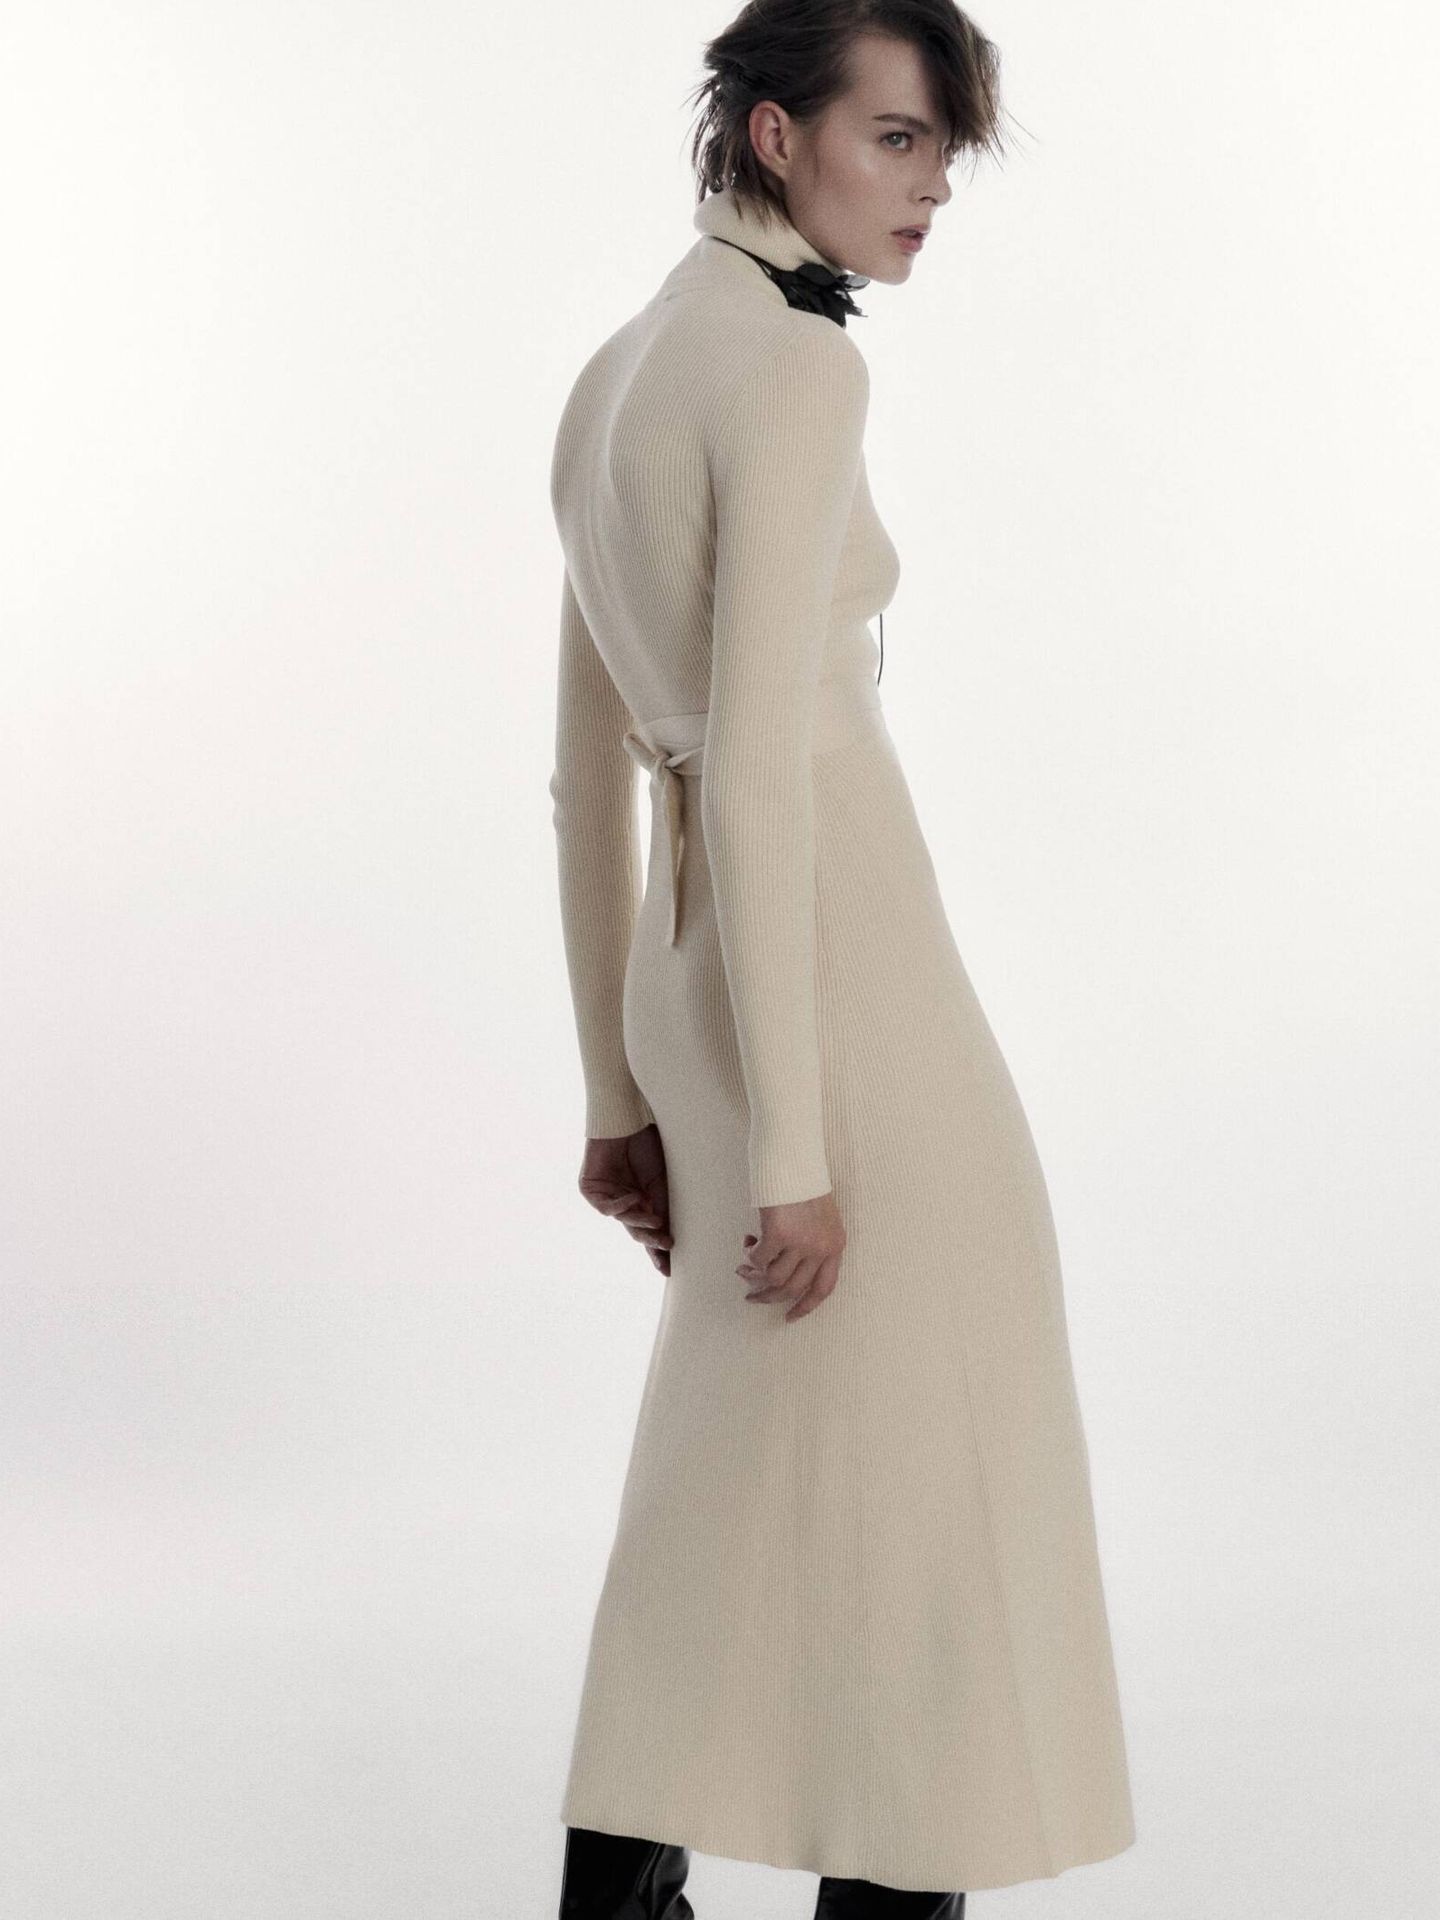 El vestido de Zara ideal para llevar con chaqueta de cuero. (Cortesía/Zara)